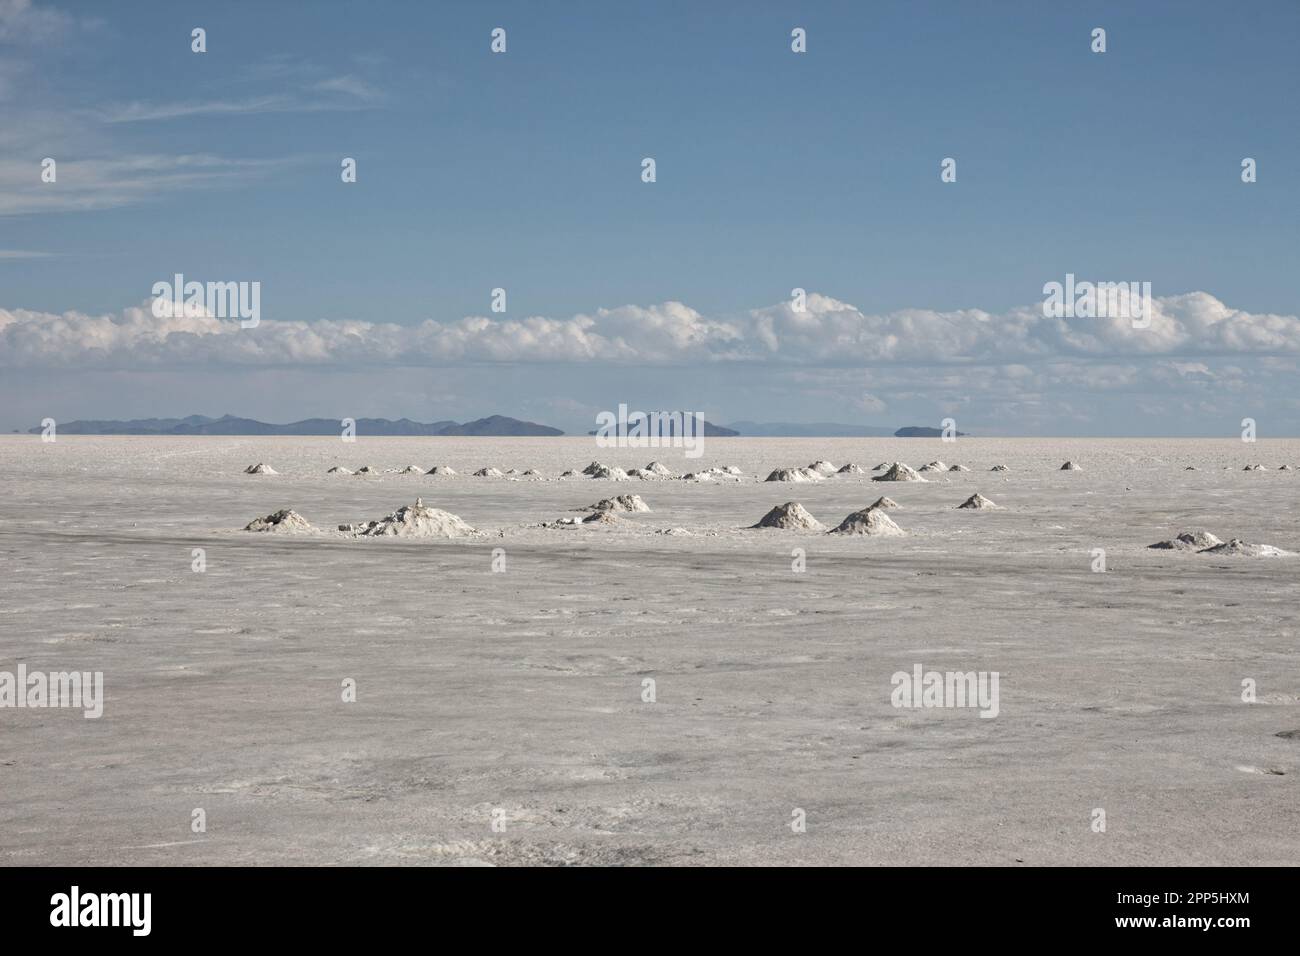 A sunny afternoon at the salt flats of Salar de Uyuni, Bolivia Stock Photo